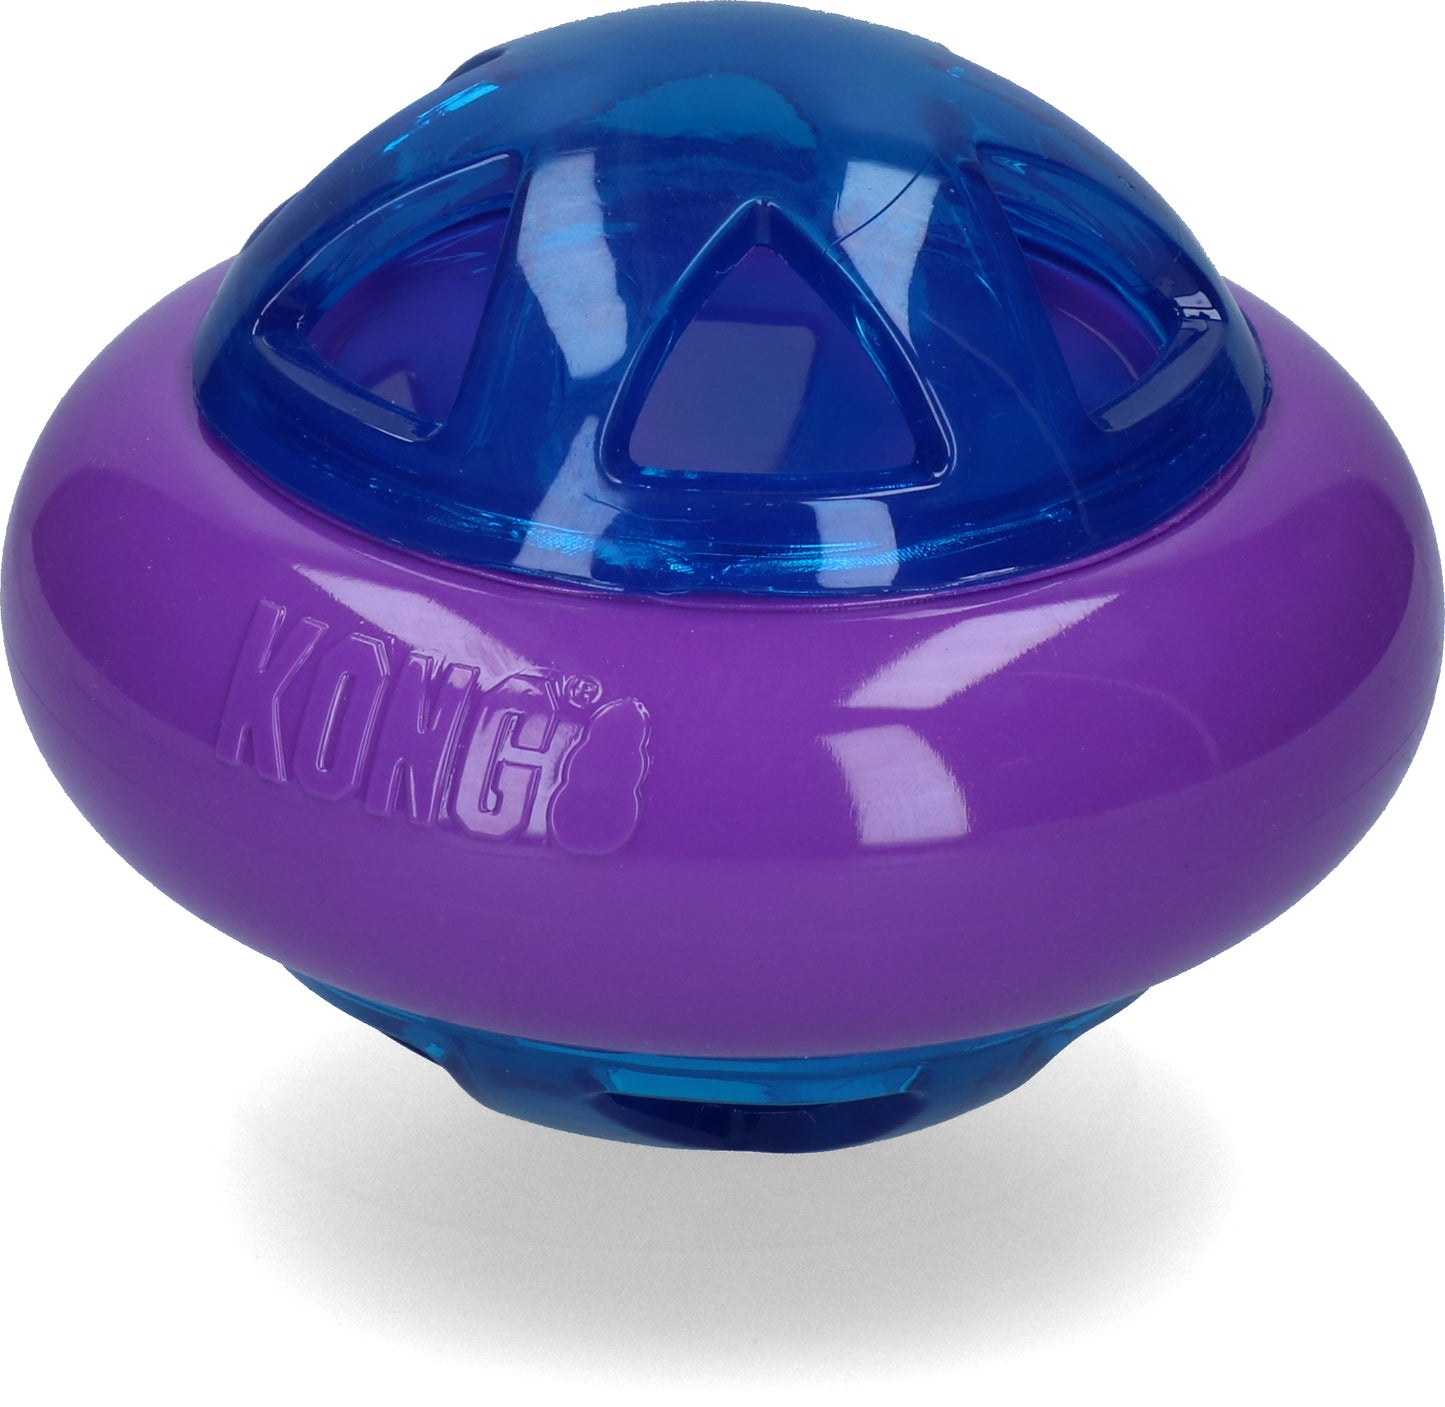 KONG Treat Dispenser Hopz Ball Dog Toy, Small